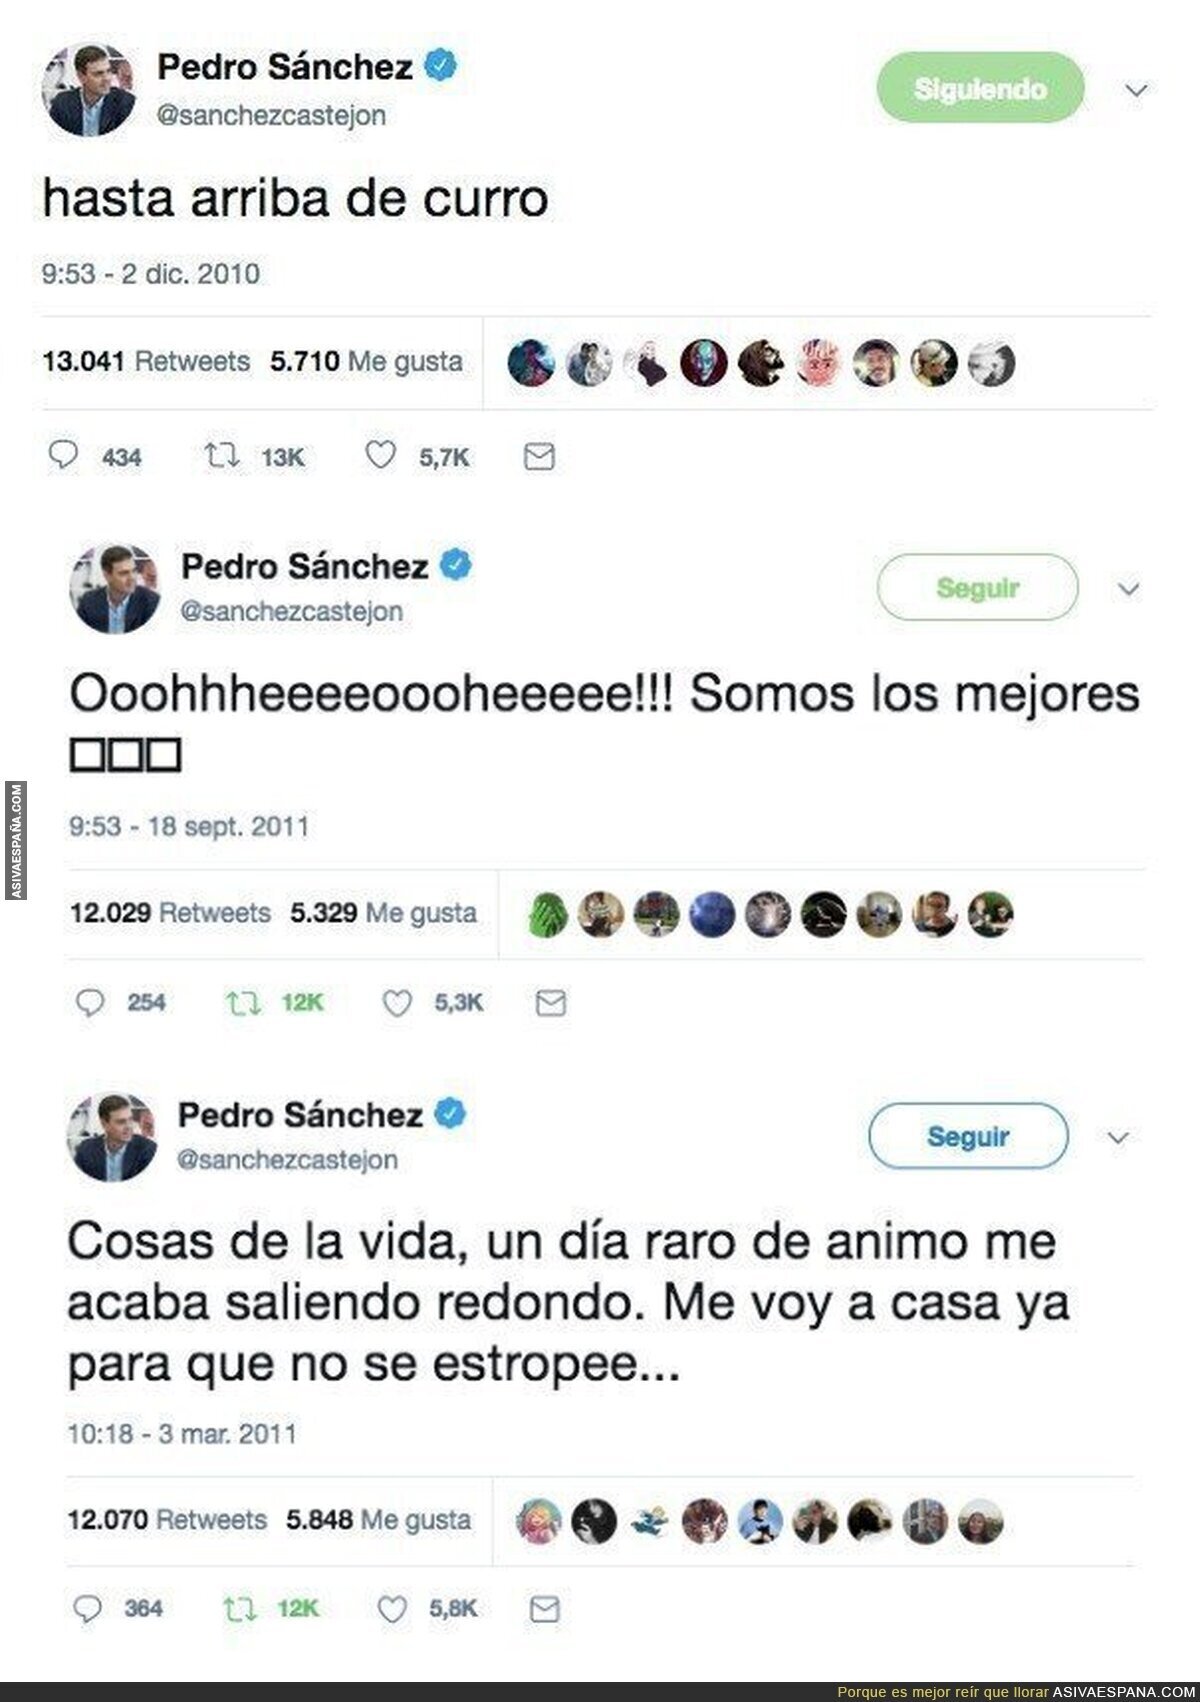 Tuits del pasado de Pedro Sánchez que vaticinan su nueva vida como presidente del Gobierno